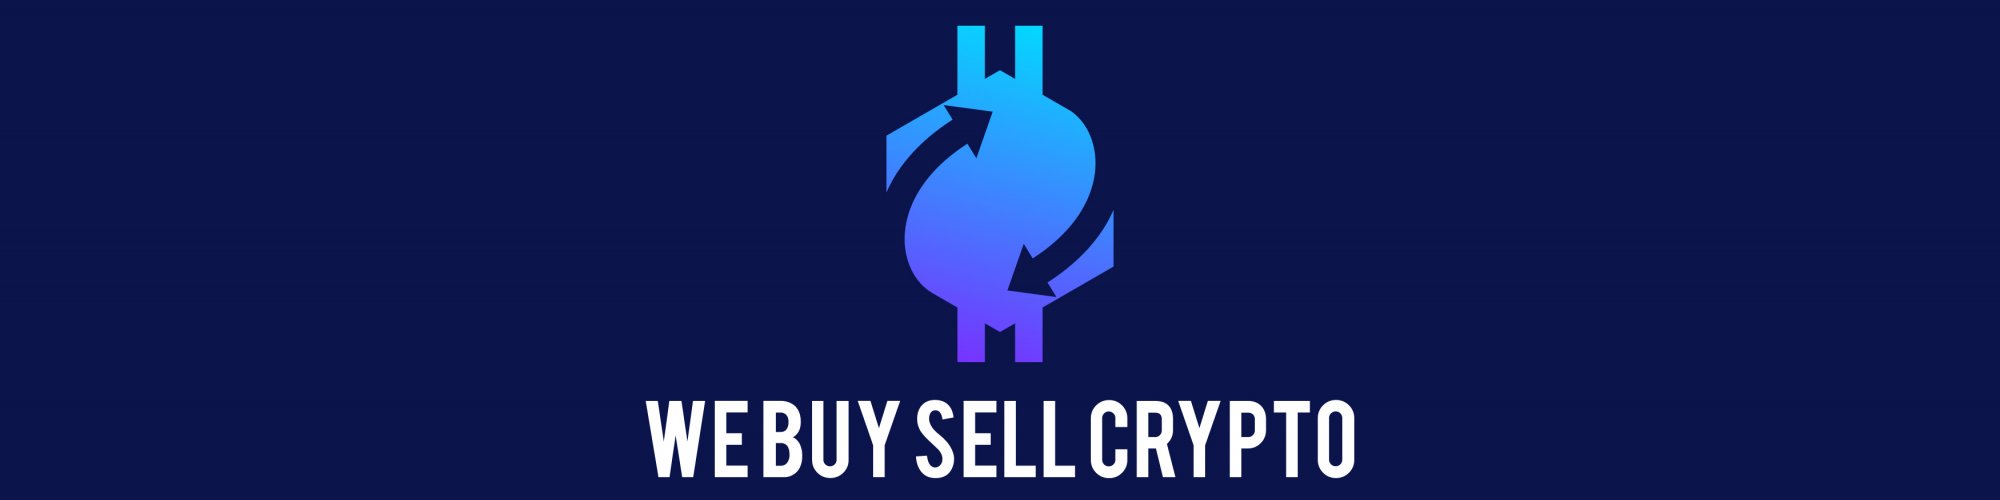 We Buy Sell Cryptocurrency USA Worldwide